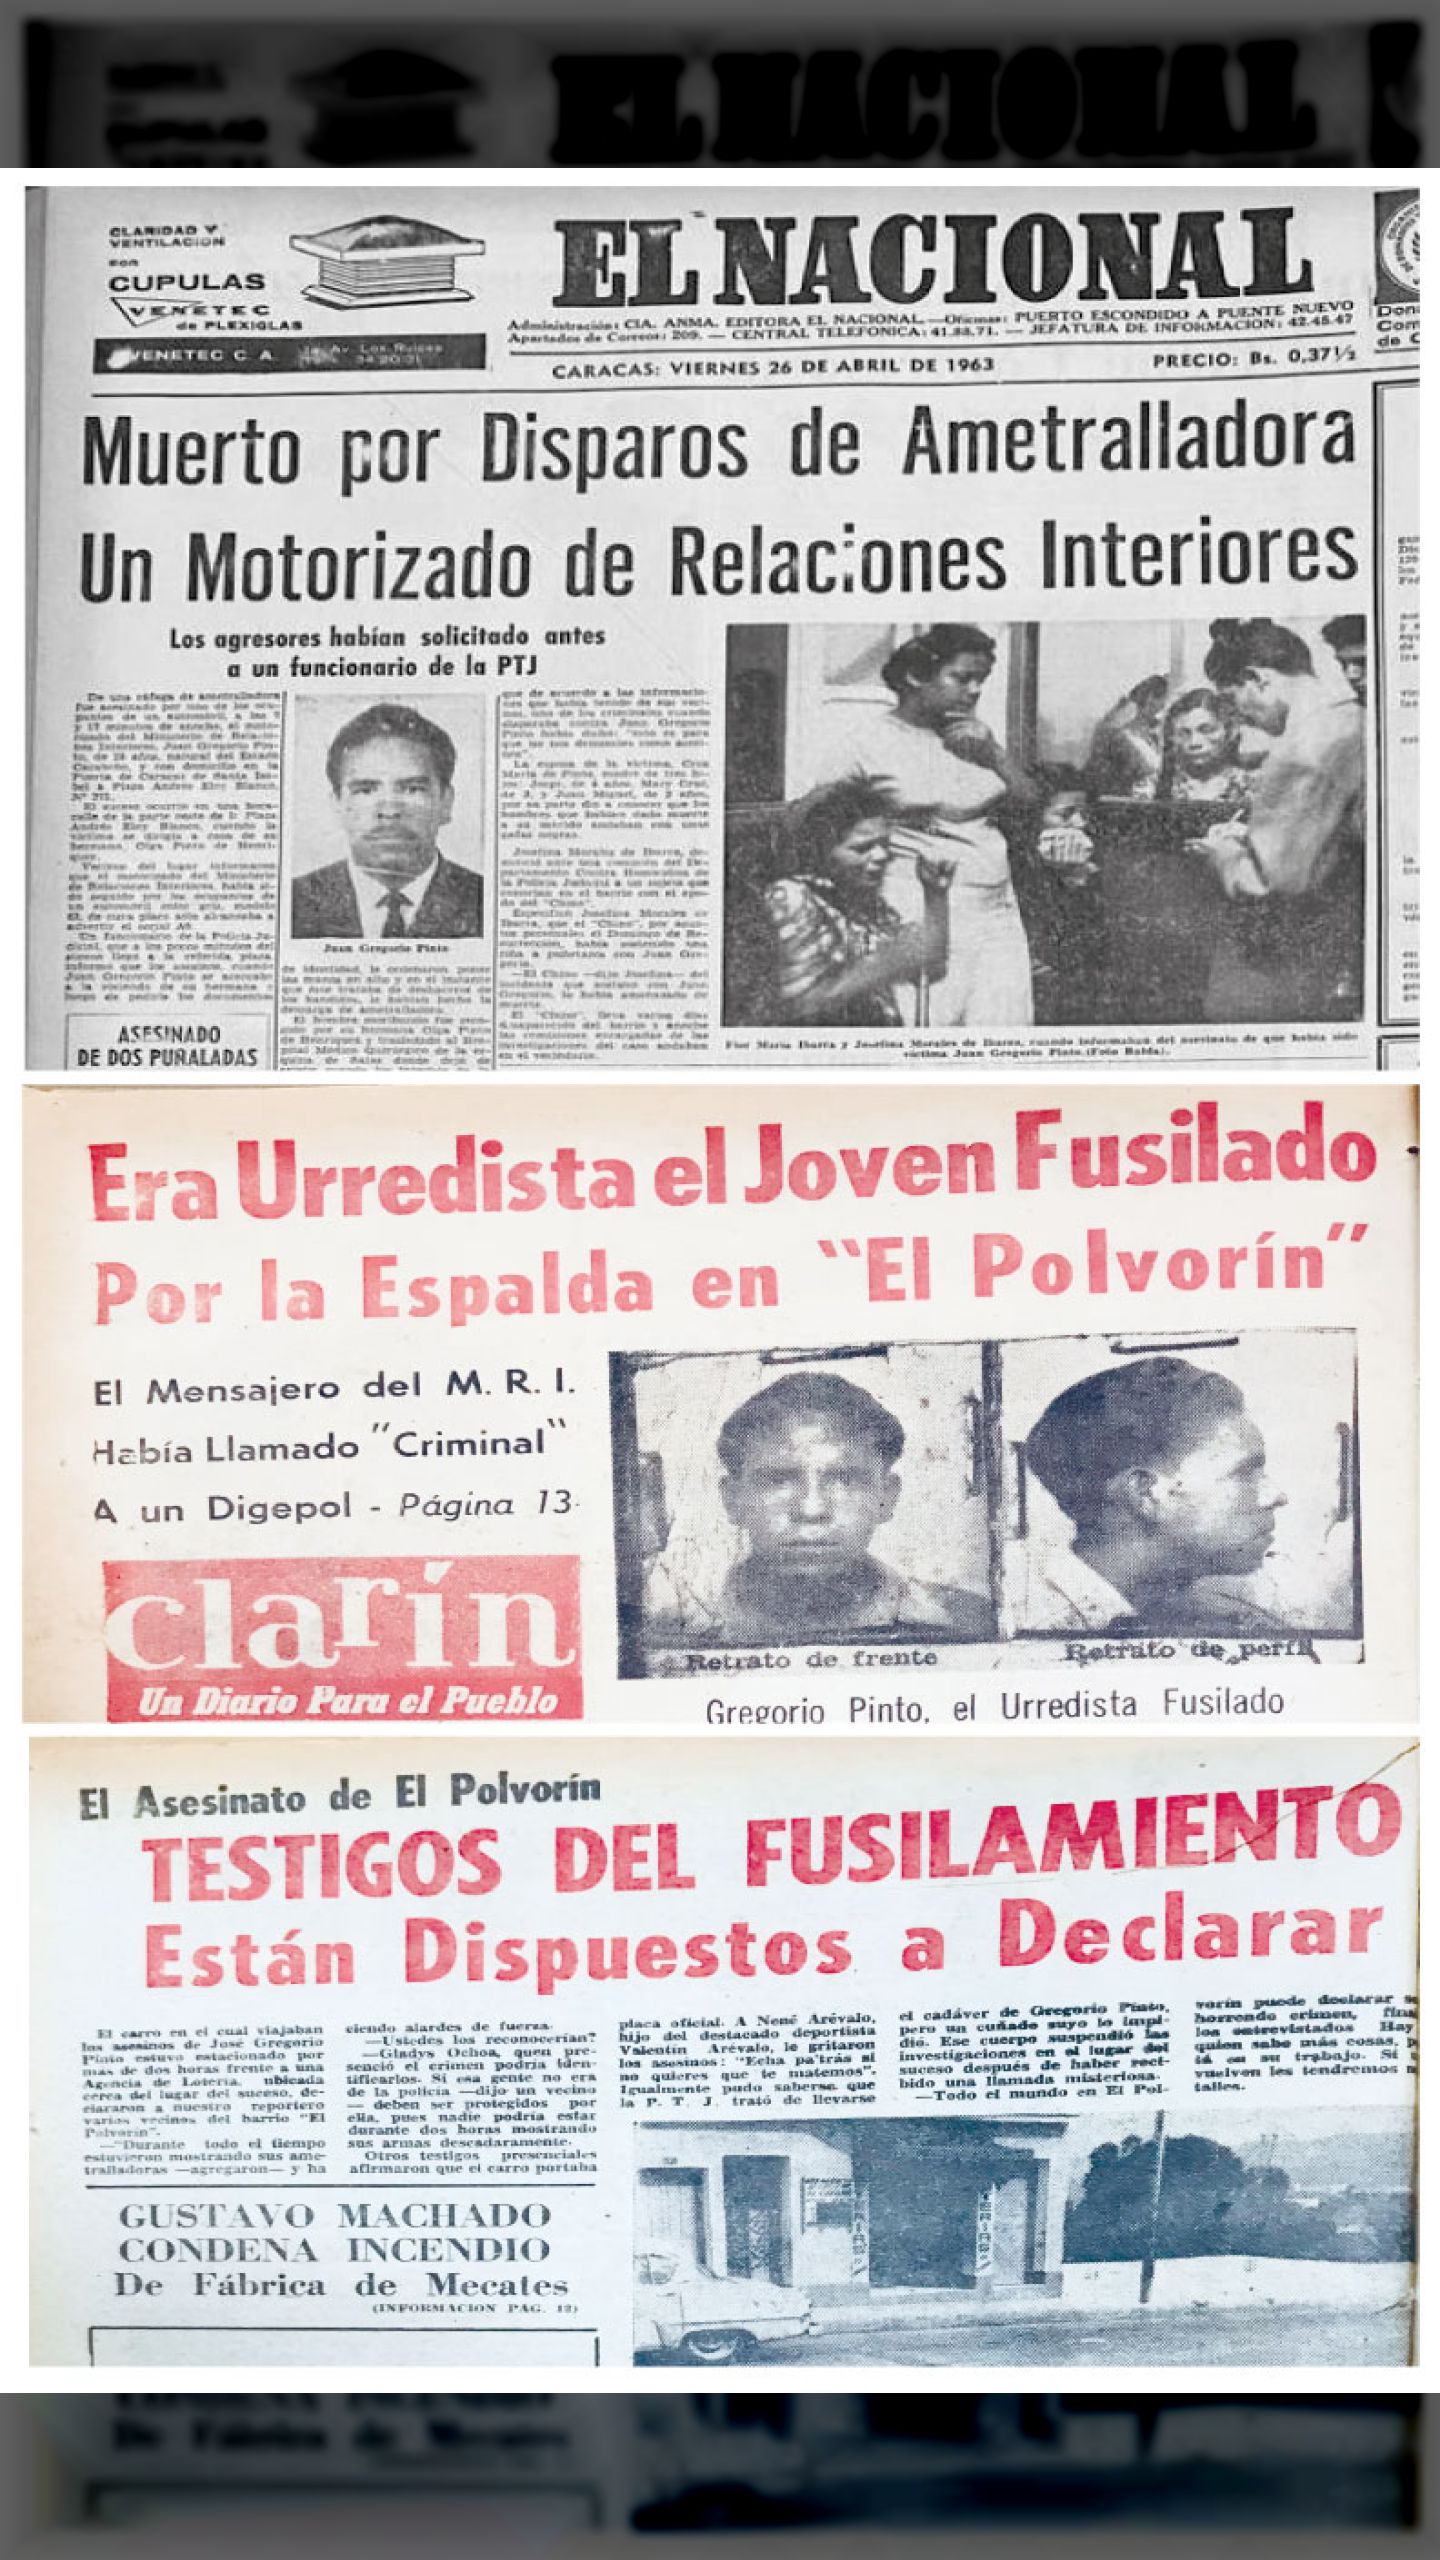 Es asesinado el dirigente urredista José Gregorio Pinto en el barrio “El Polvorín” (CLARÍN, 29 de abril 1963)